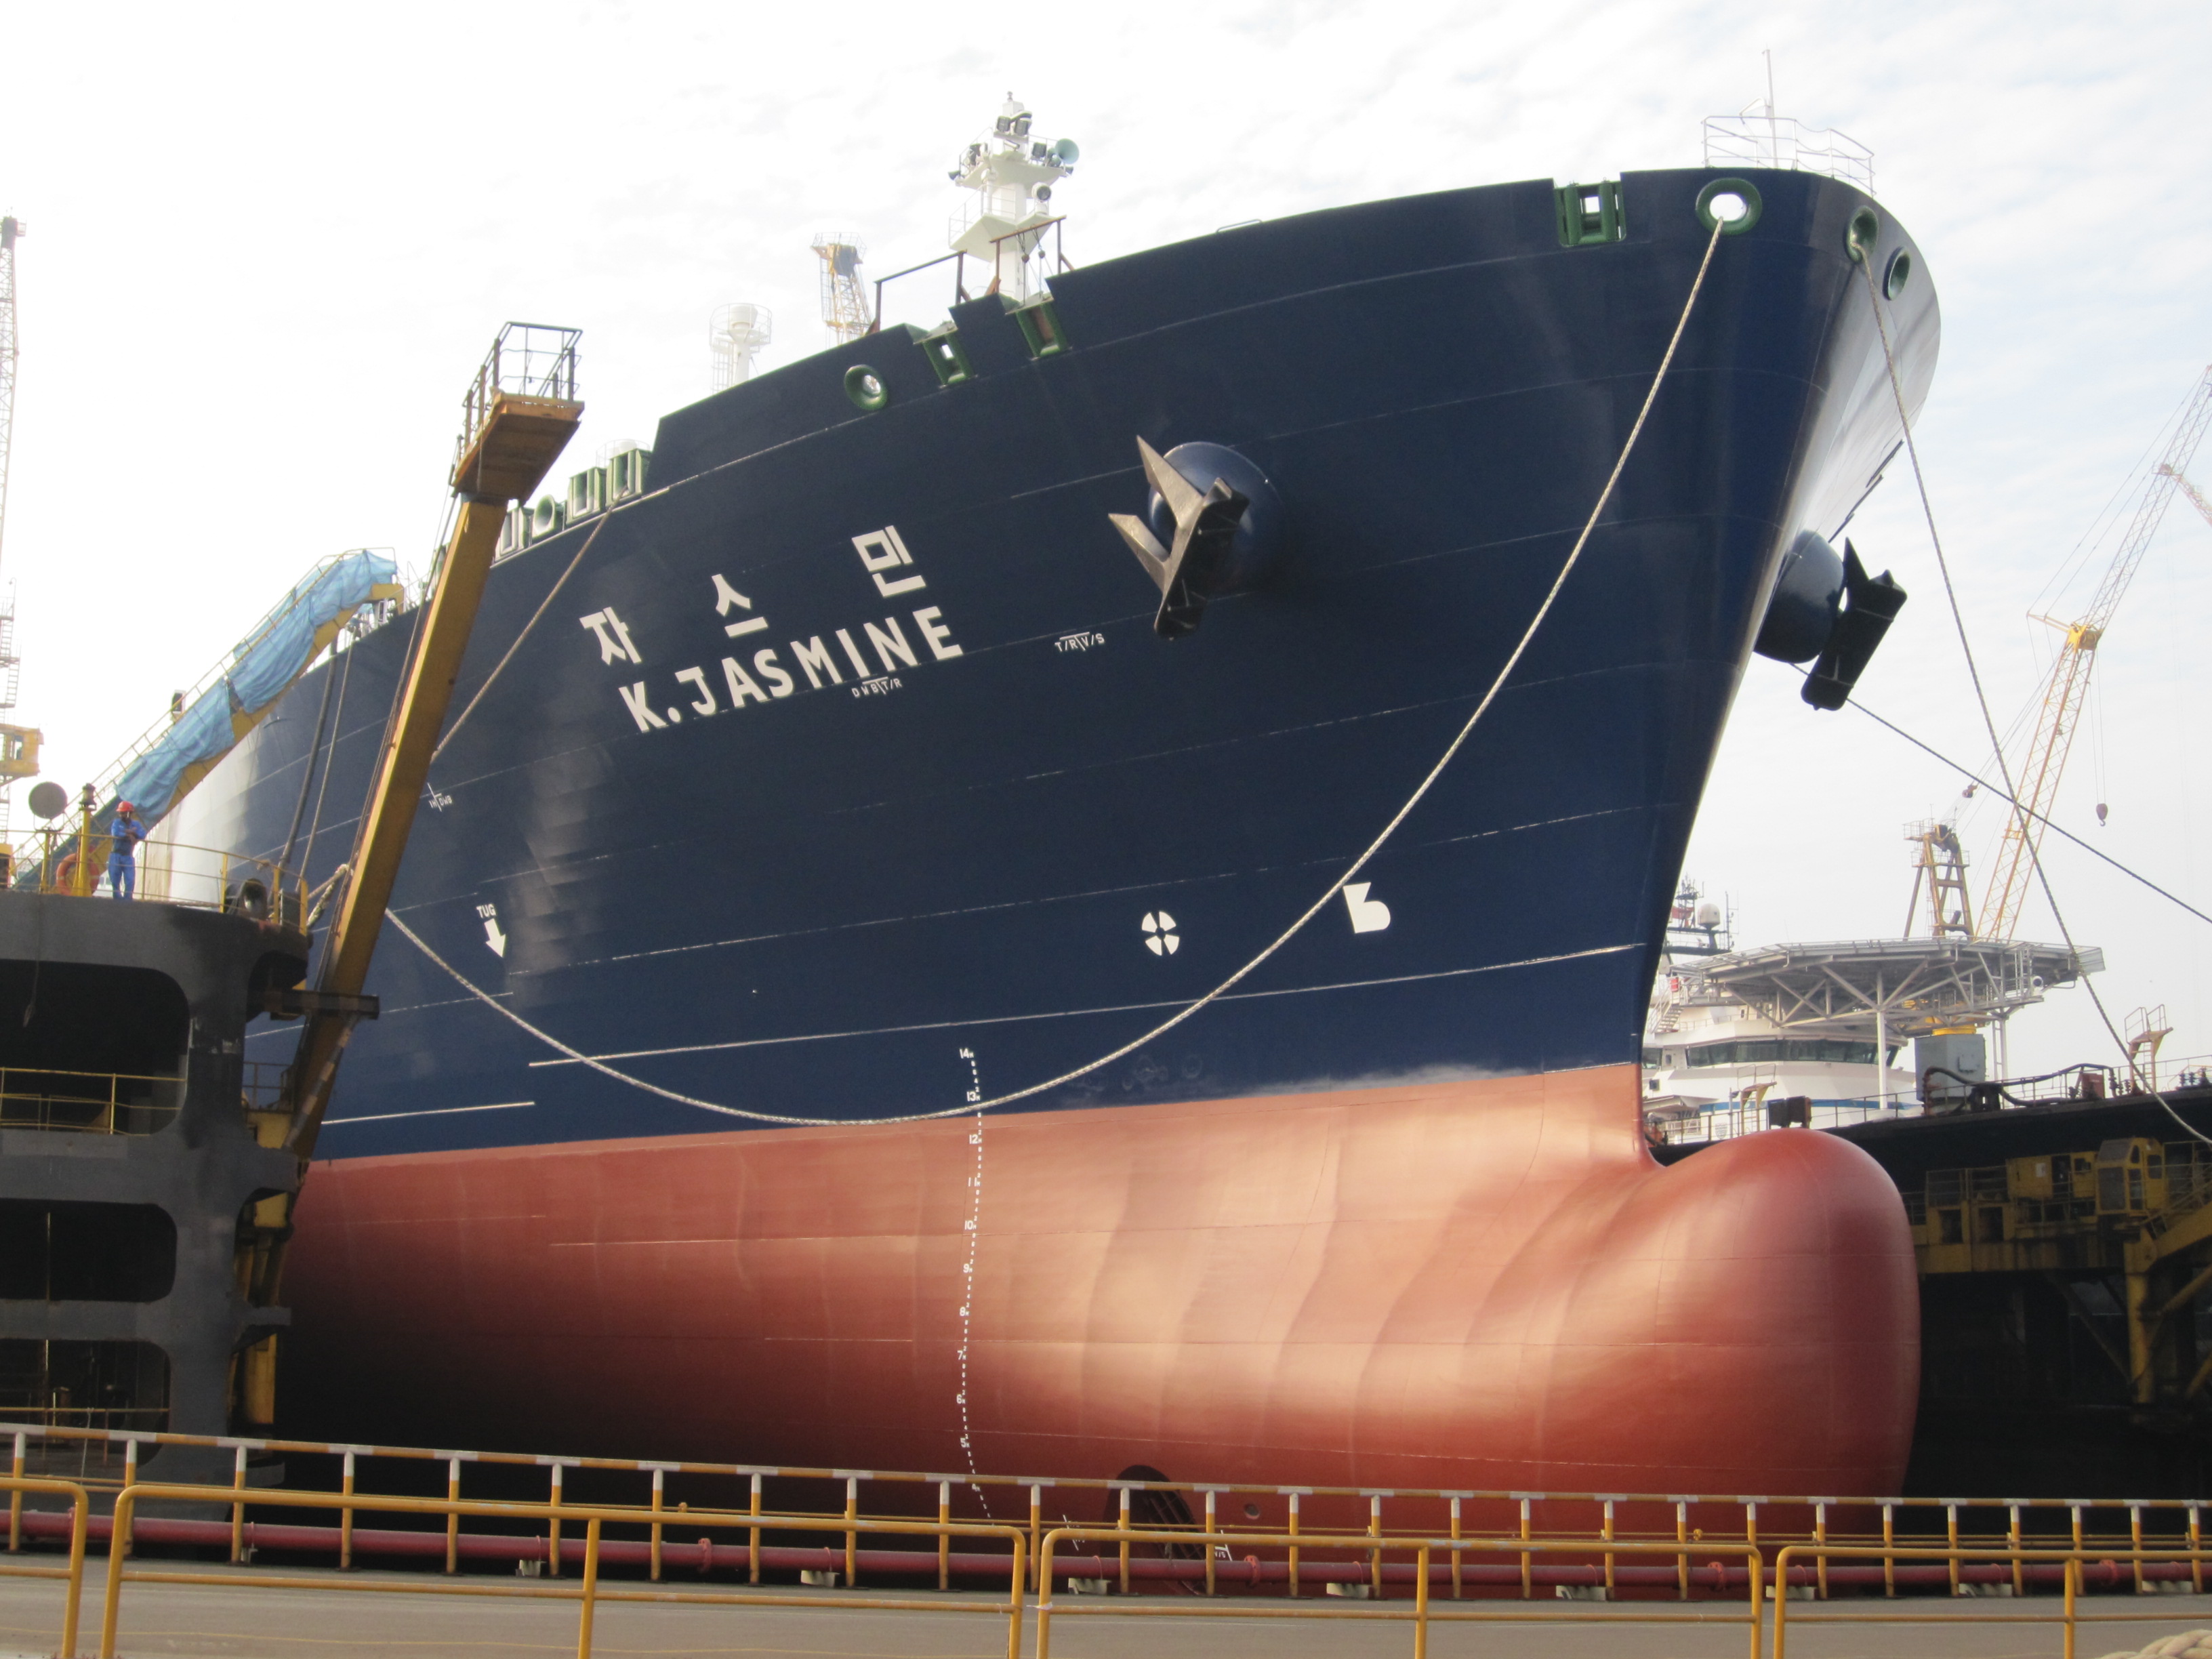 K. Jasmine LNG tanker undergoing repairs at Samkang S&C yard